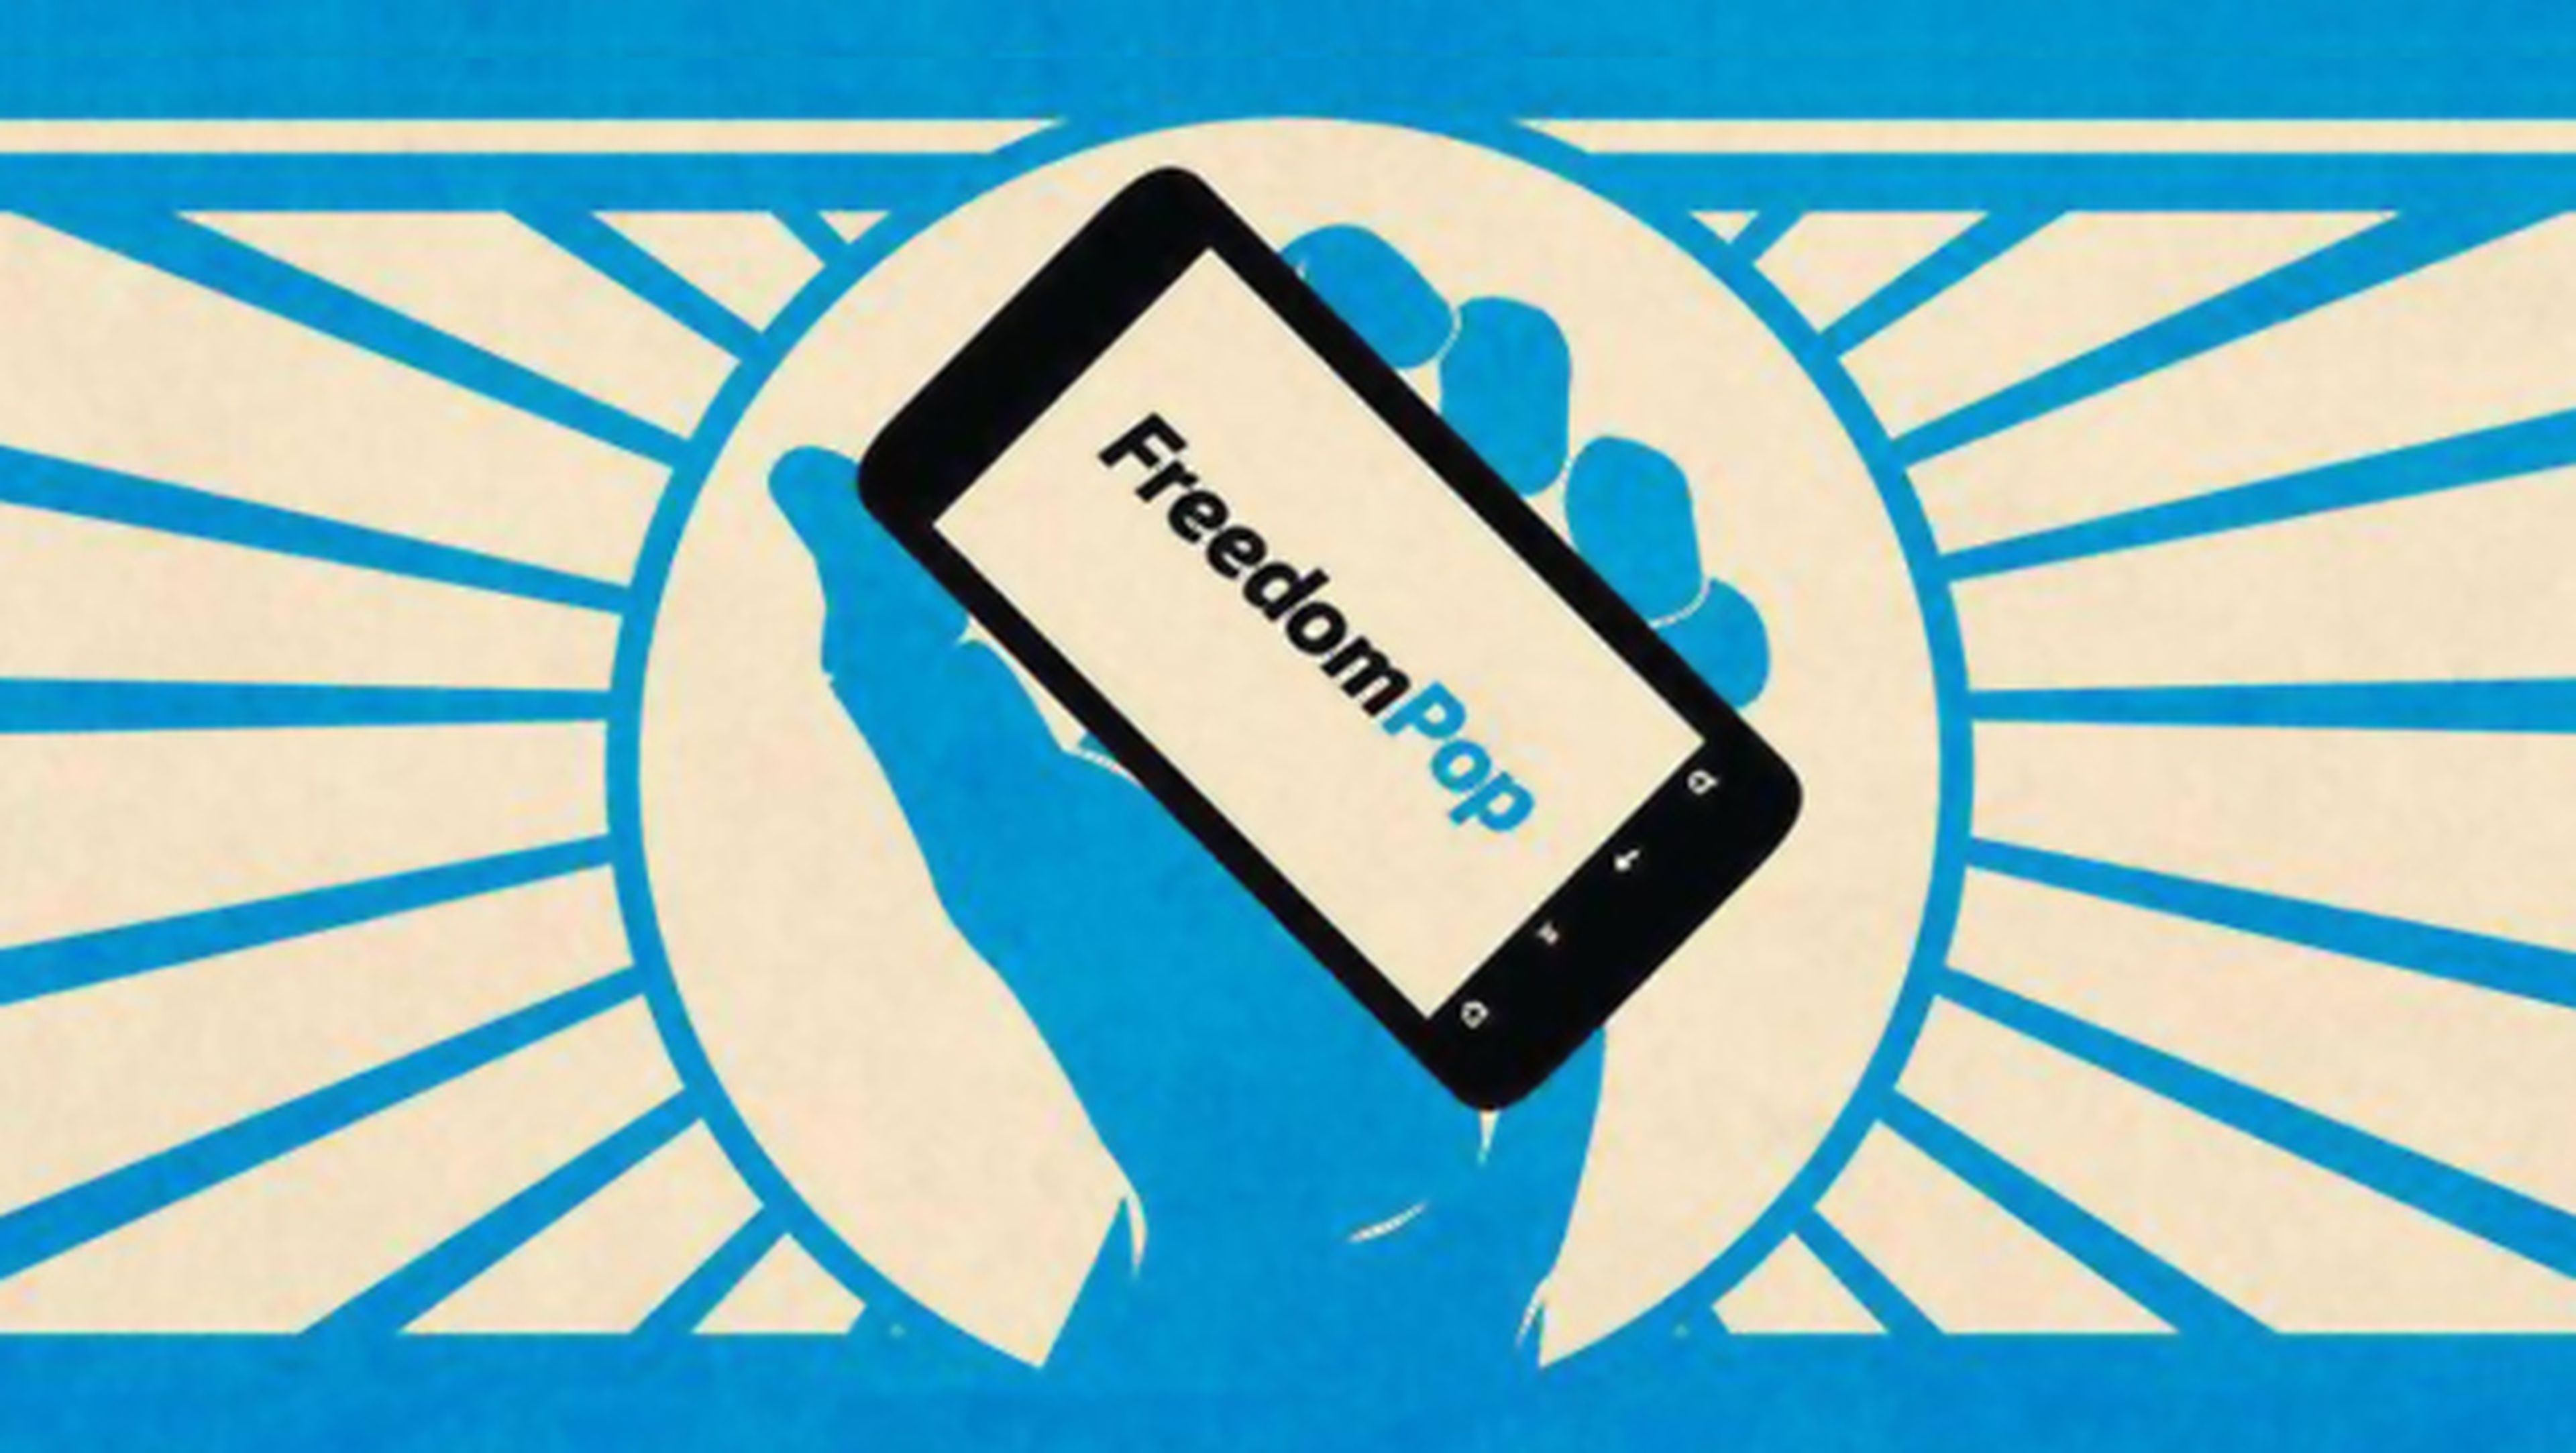 FreedomPop ofrece datos ilimitados gratuitos a sus clientes